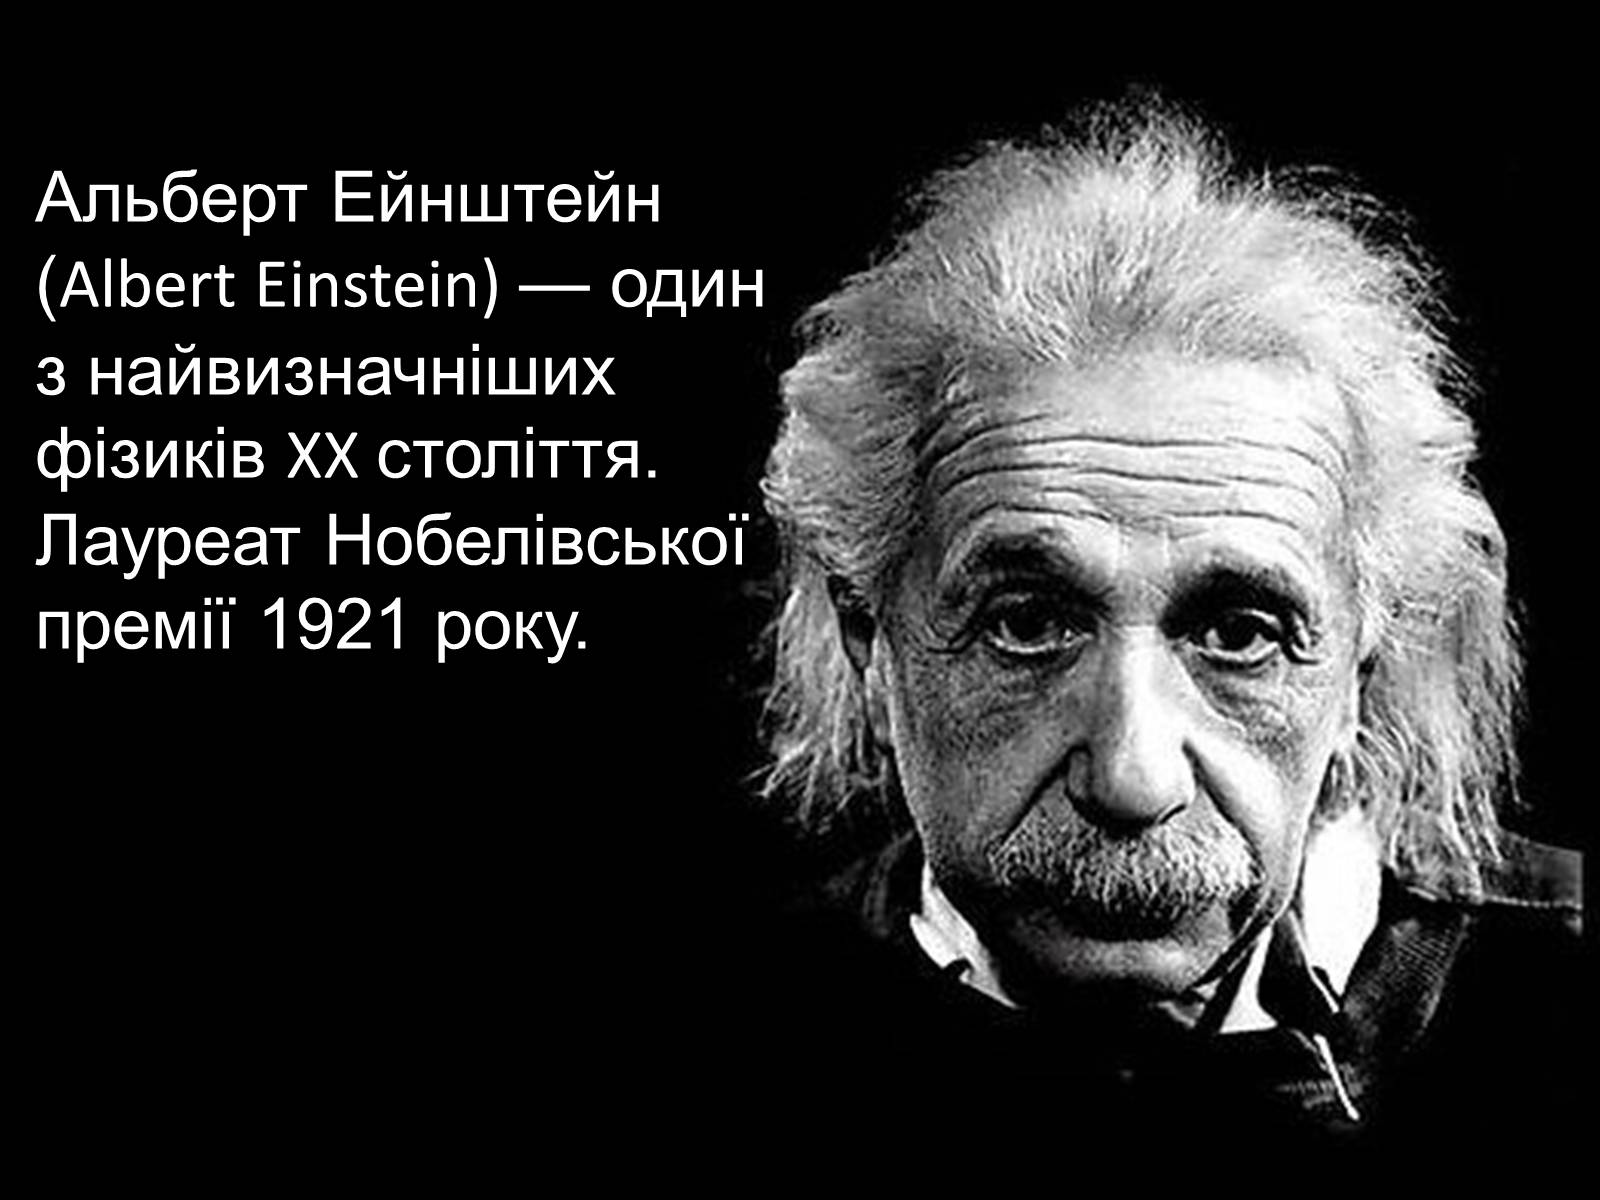 Нужный гениальный. Эйнштейн цитаты. Самая большая глупость Эйнштейн.